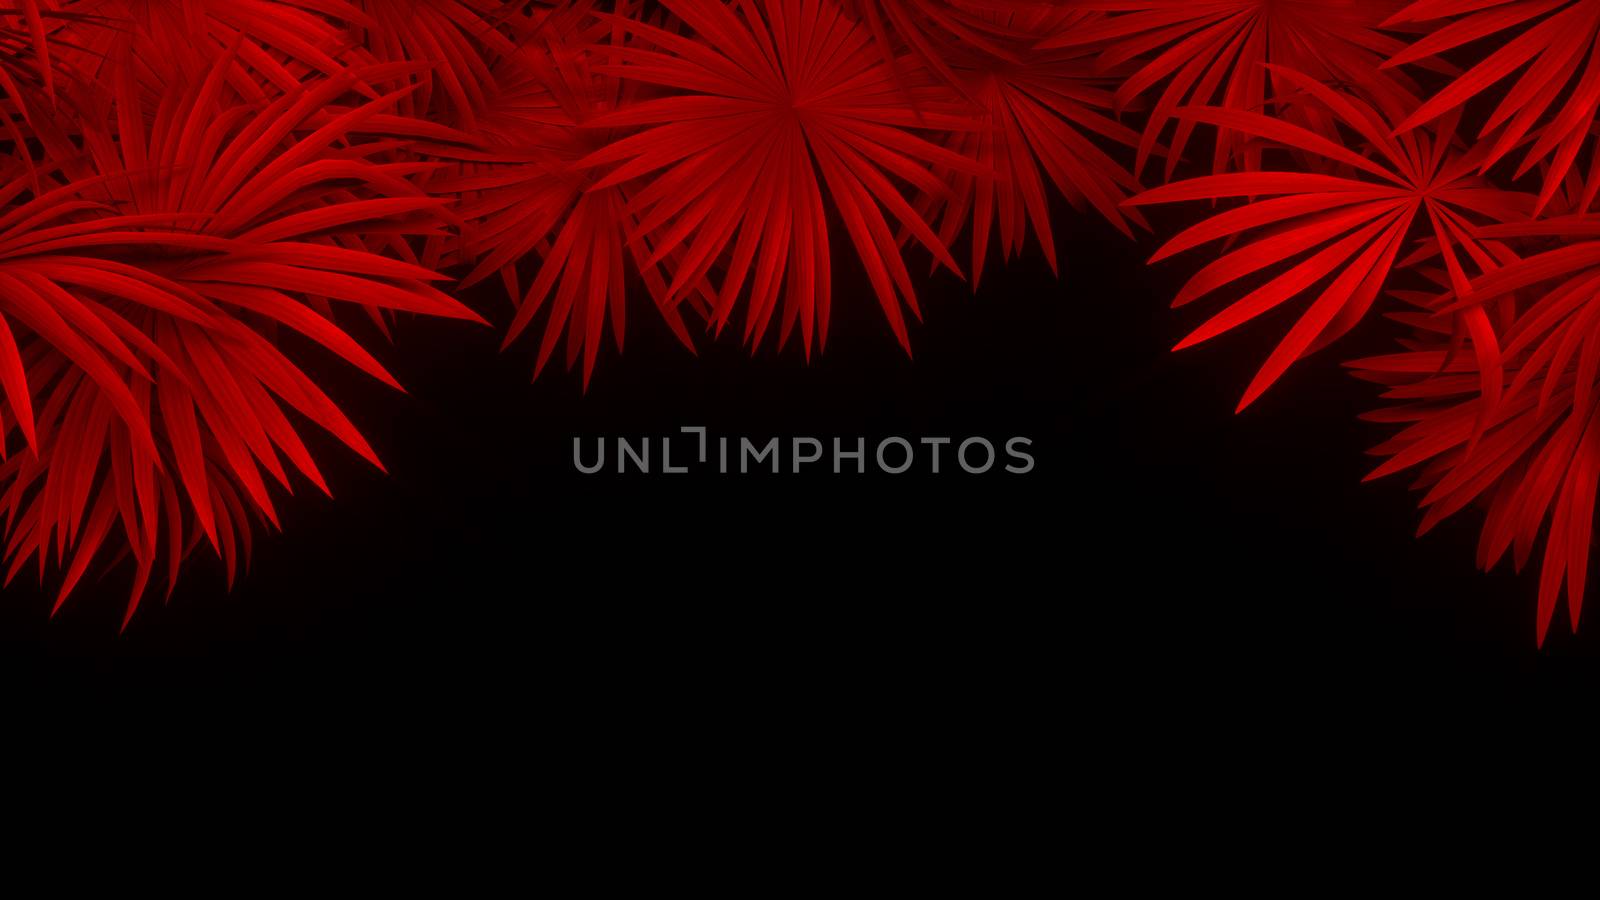 3d render of neon palm leaves on black background. Banner design. Retrowave, synthwave, vaporwave illustration. Party and sales concept